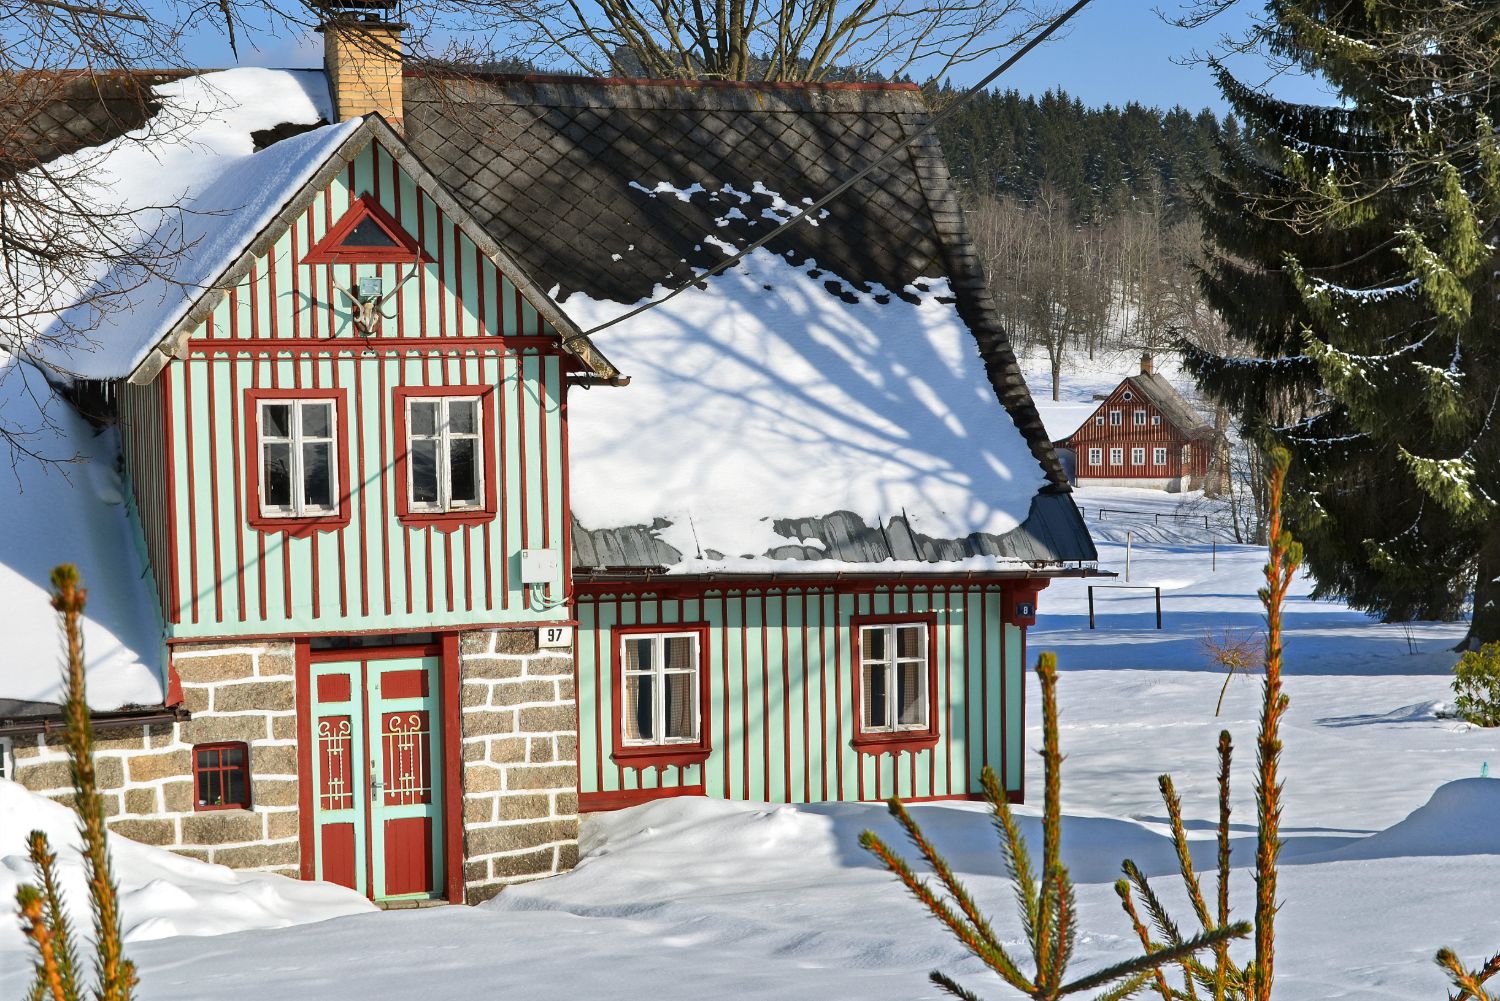 Dřevěná chalupa v Jizerských horách (Karlov) v zimě - roubení v zeleno-červeno-bílé barvě